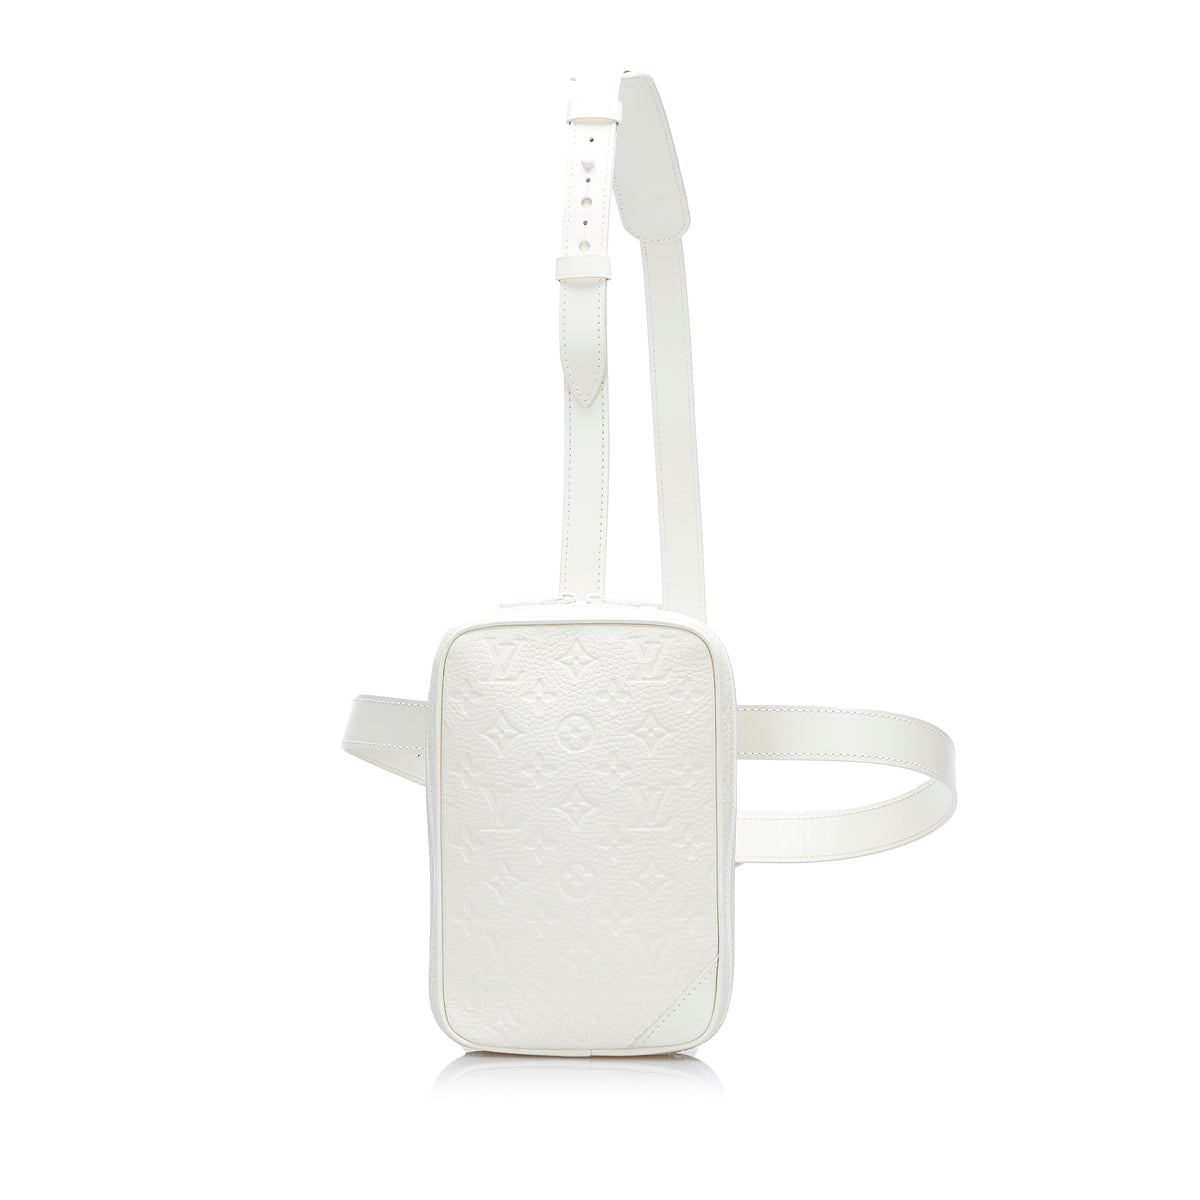 Louis Vuitton Utility Side Bag Monogram Powder White in Taurillon